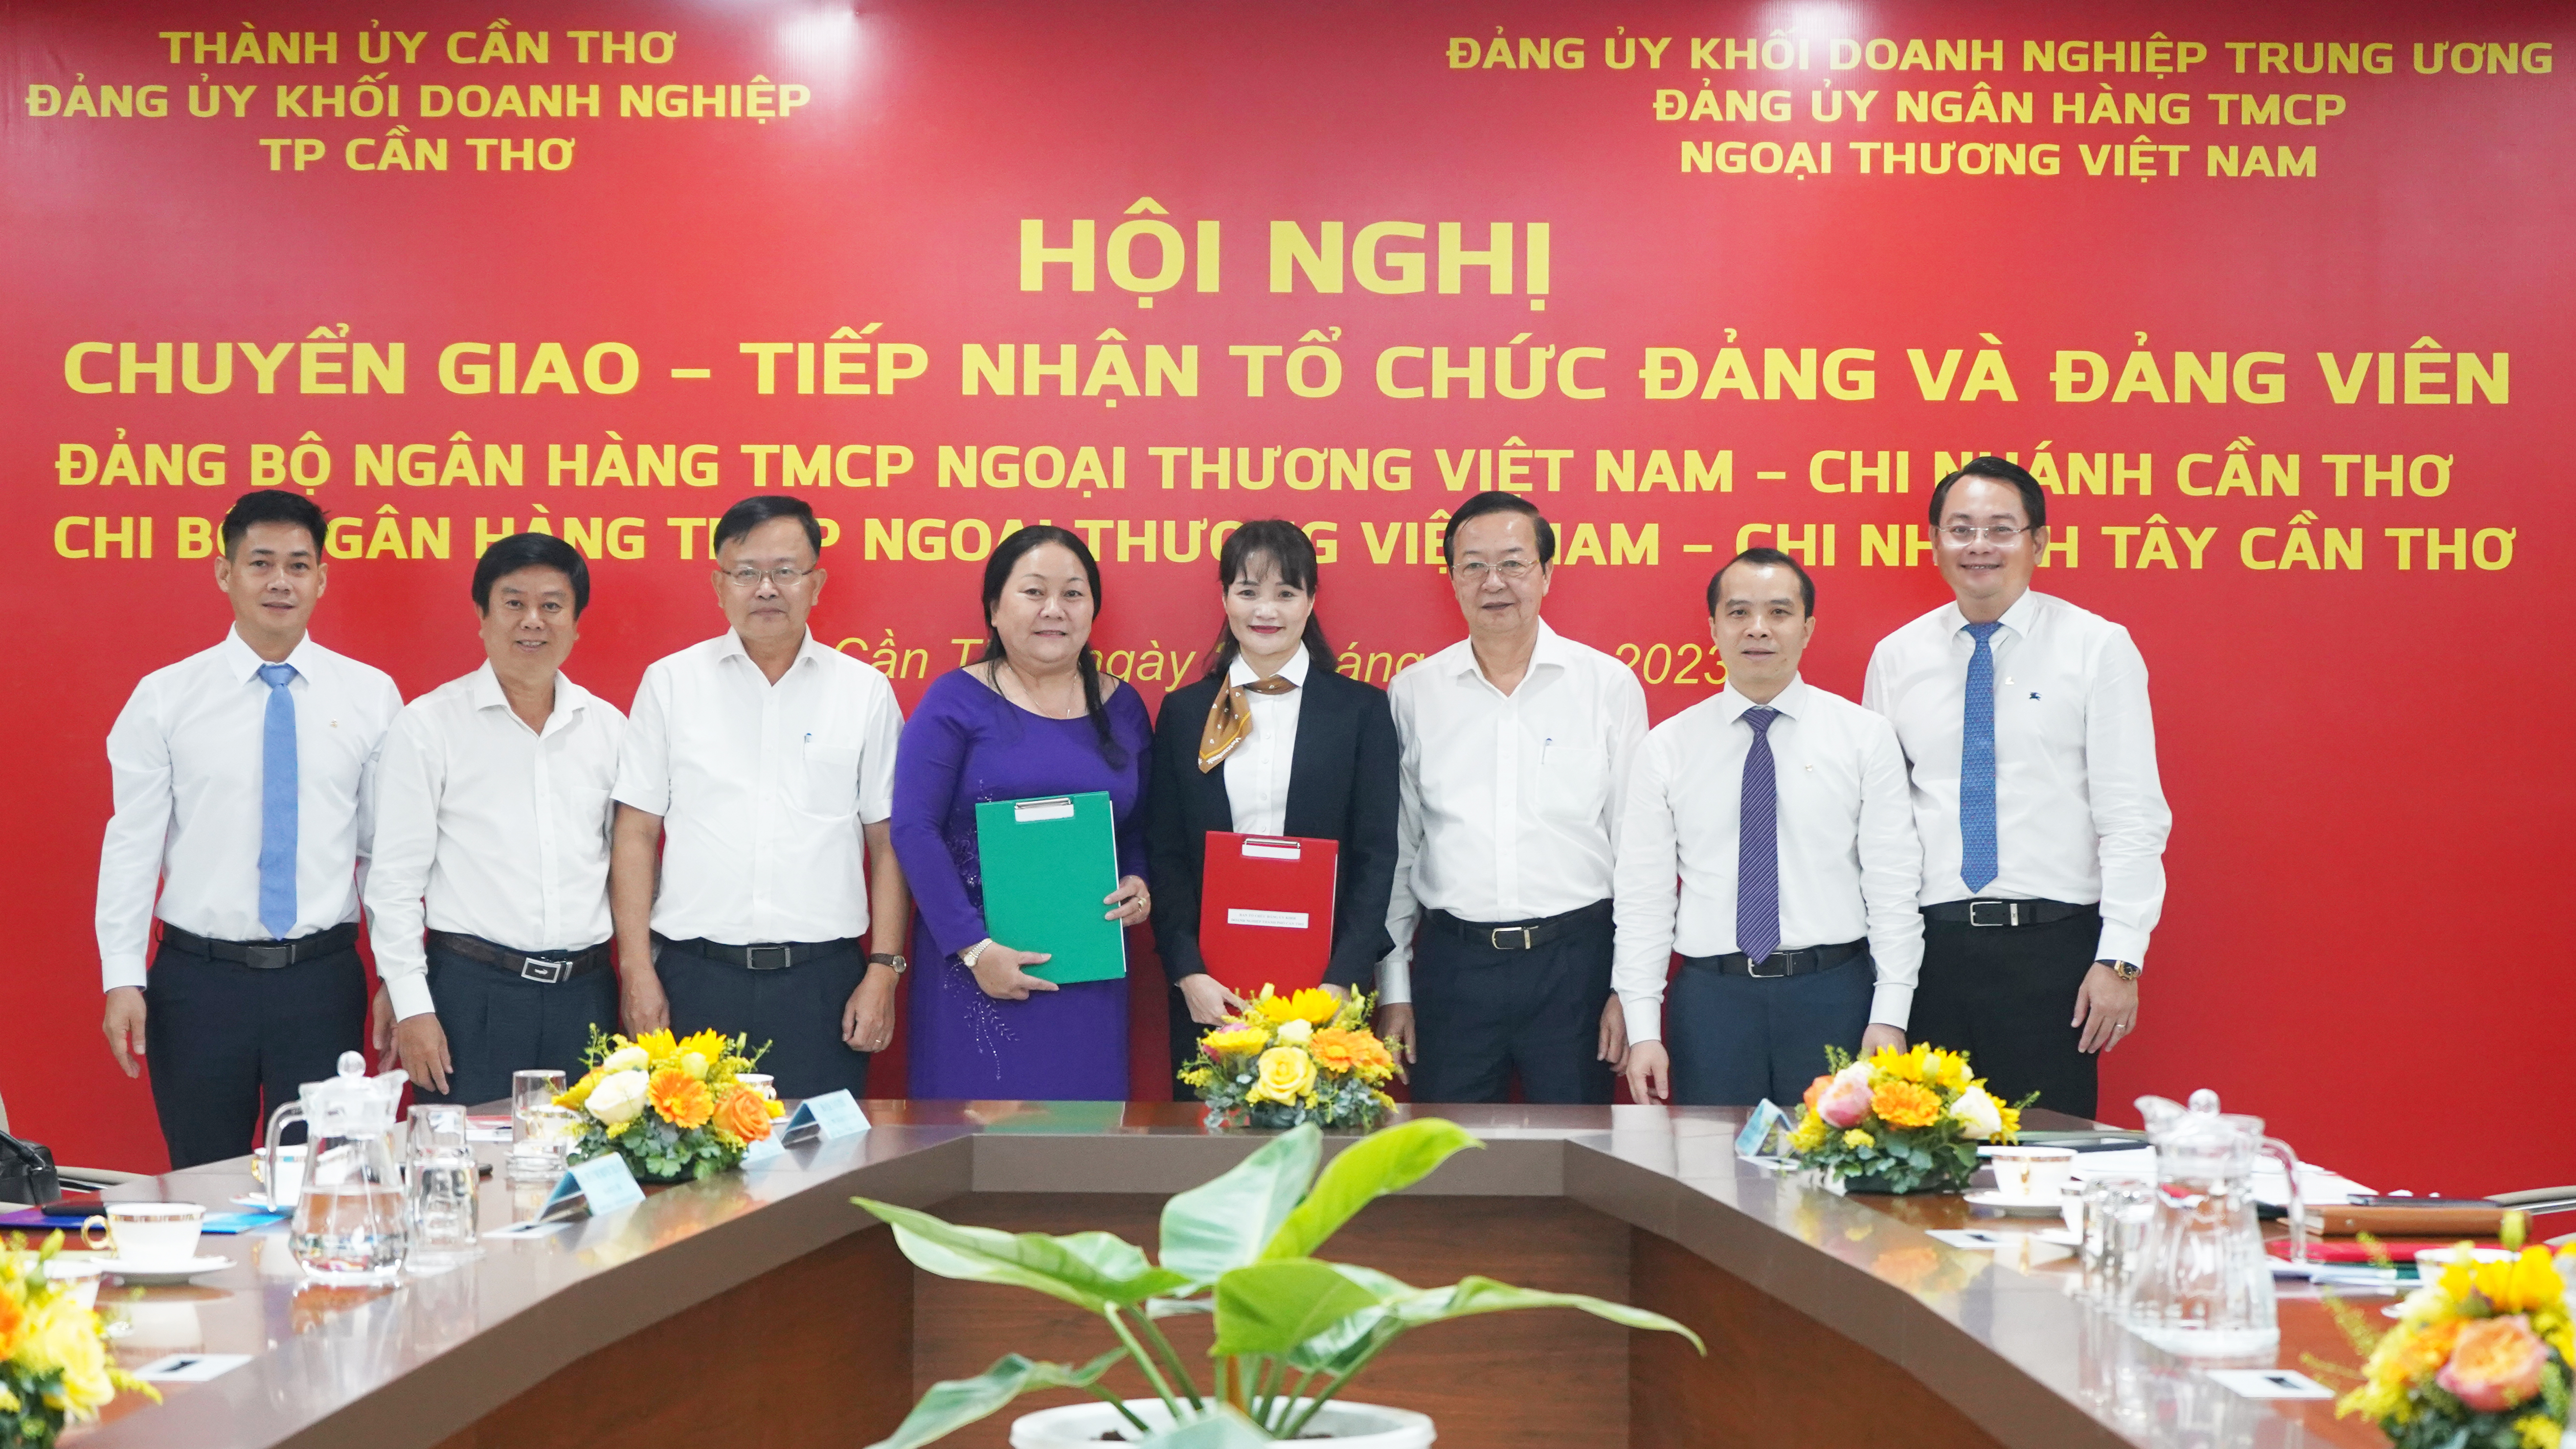 Lễ chuyển giao, tiếp nhận Đảng bộ Vietcombank Cần Thơ và Chi bộ Vietcombank Tây Cần Thơ về trực thuộc Đảng ủy Vietcombank 